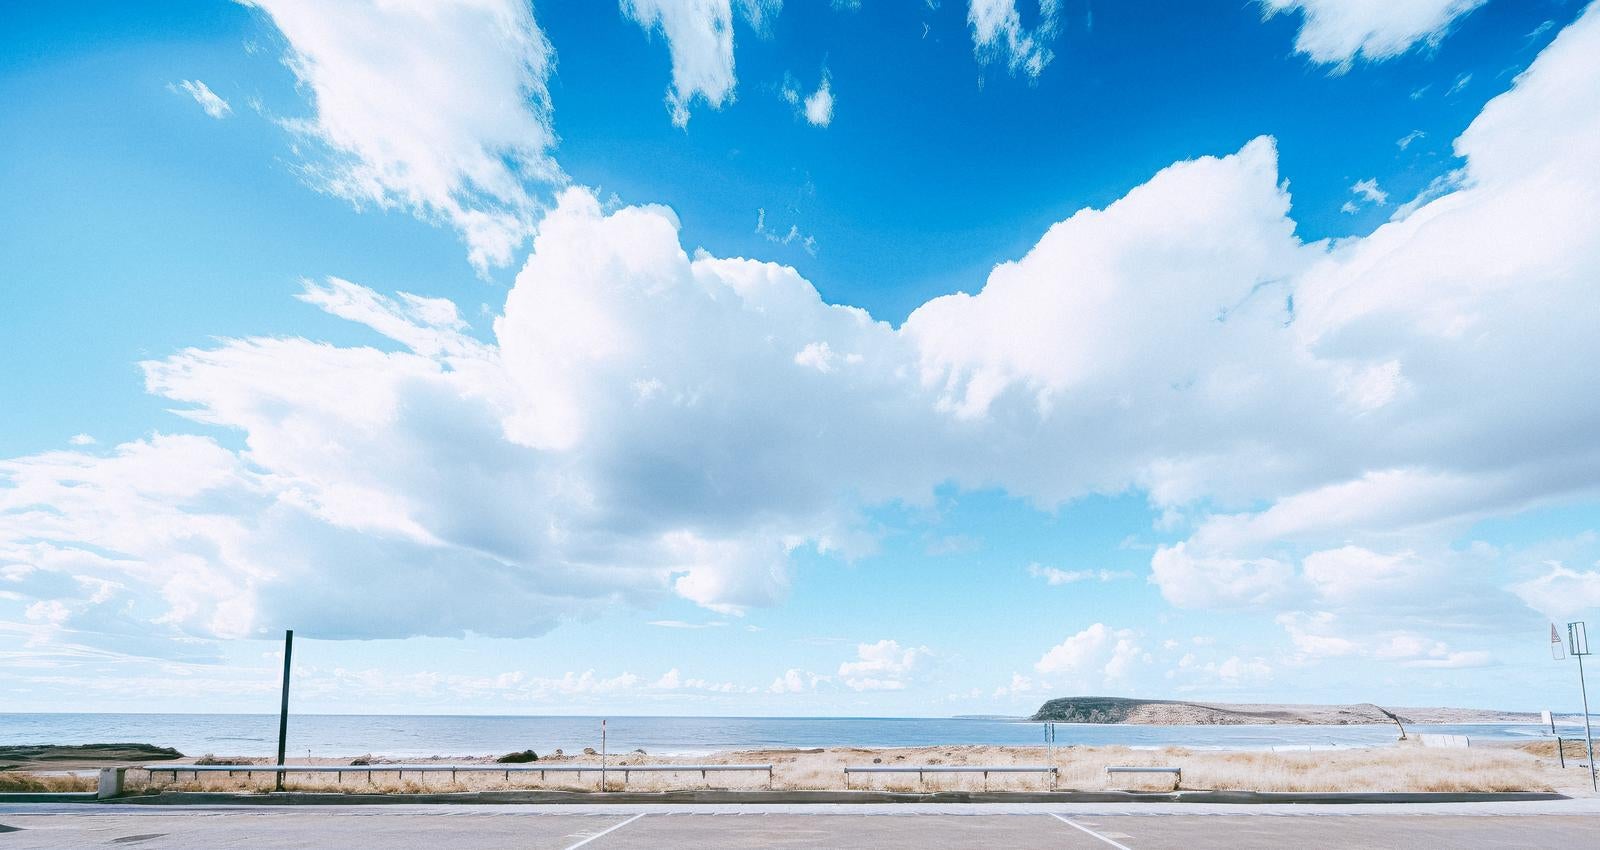 「海岸前の広場と広がる青空」の写真